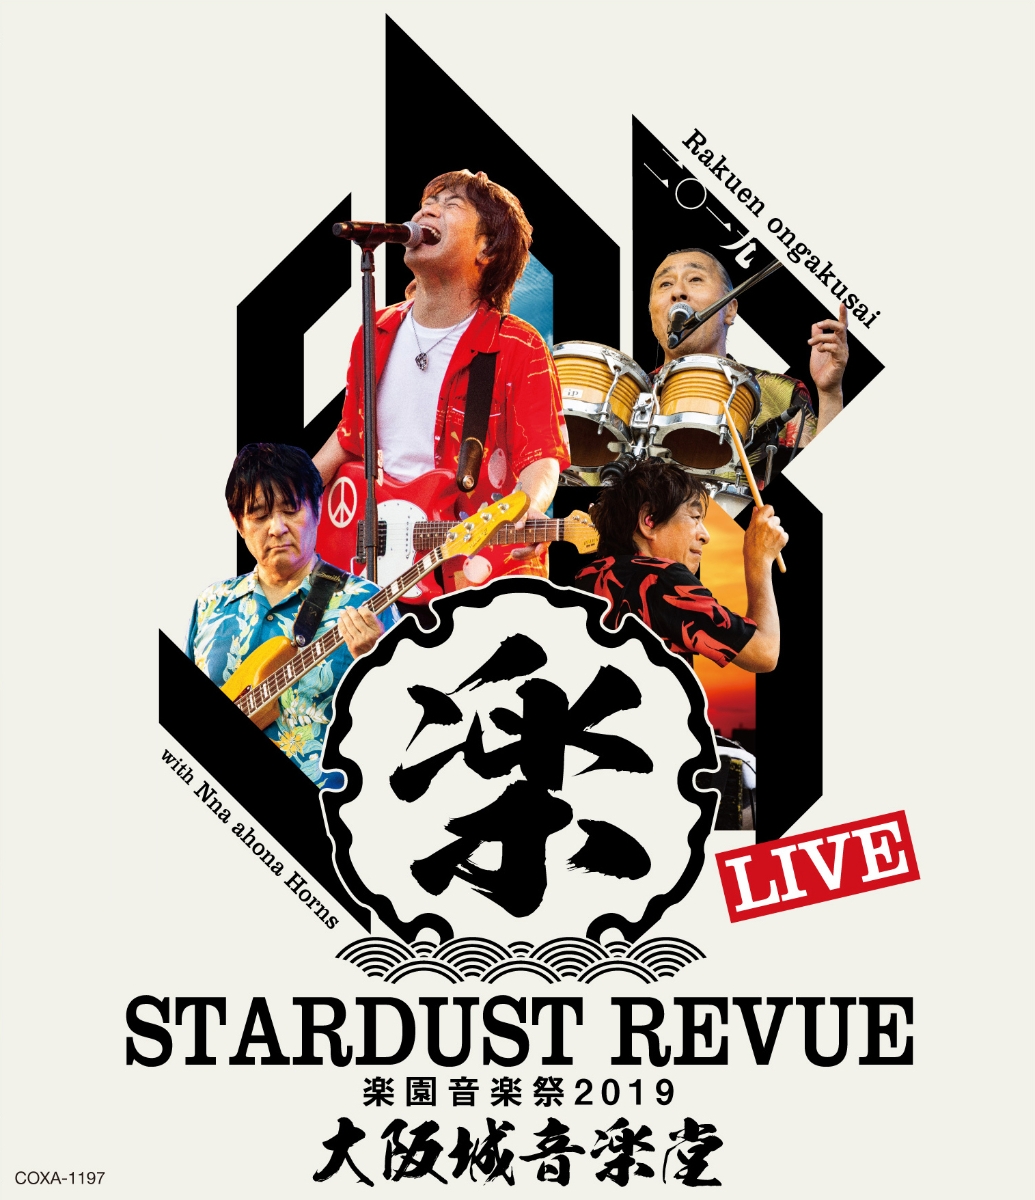 楽天ブックス: STARDUST REVUE 楽園音楽祭 2019 大阪城音楽堂【初回